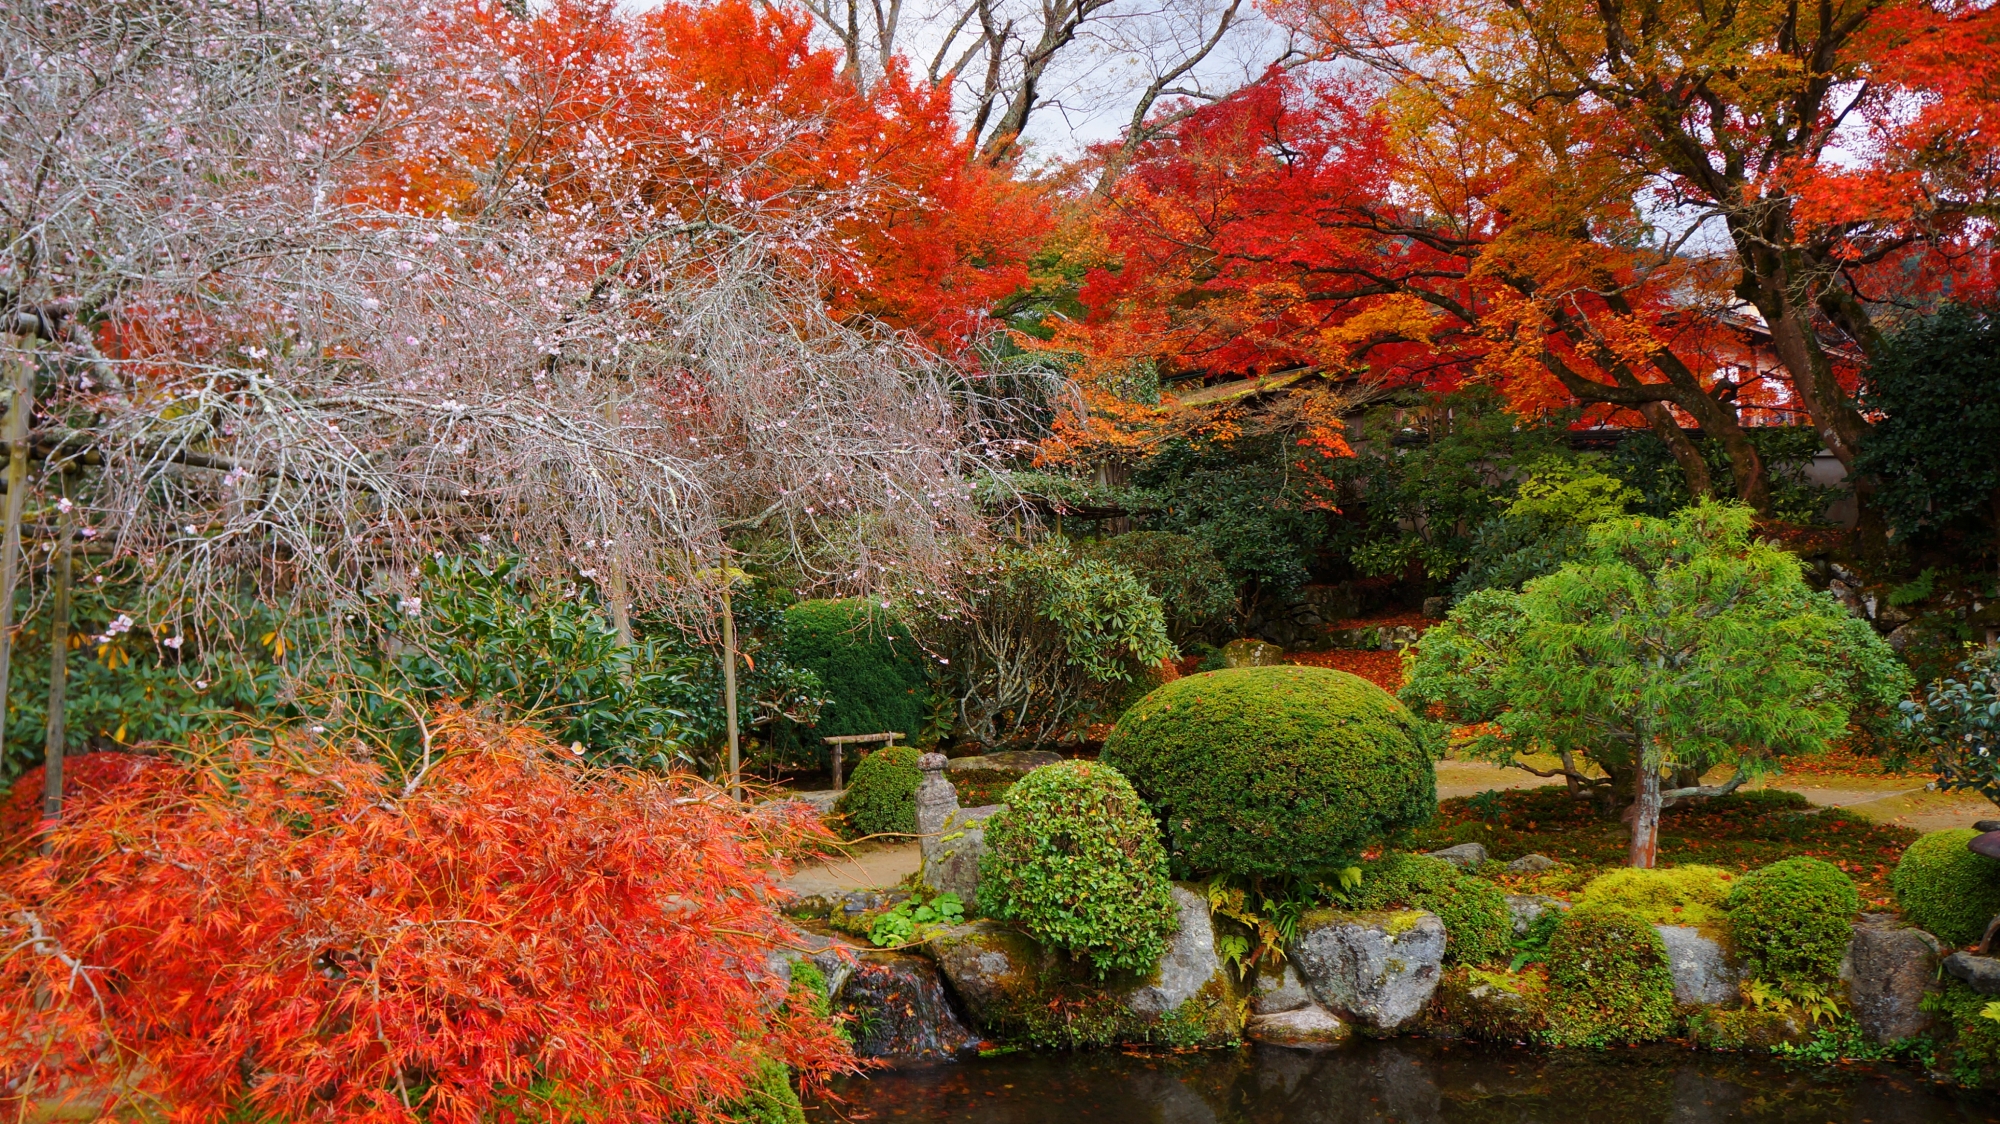 桜と紅葉に彩られた秋の趣きある庭園